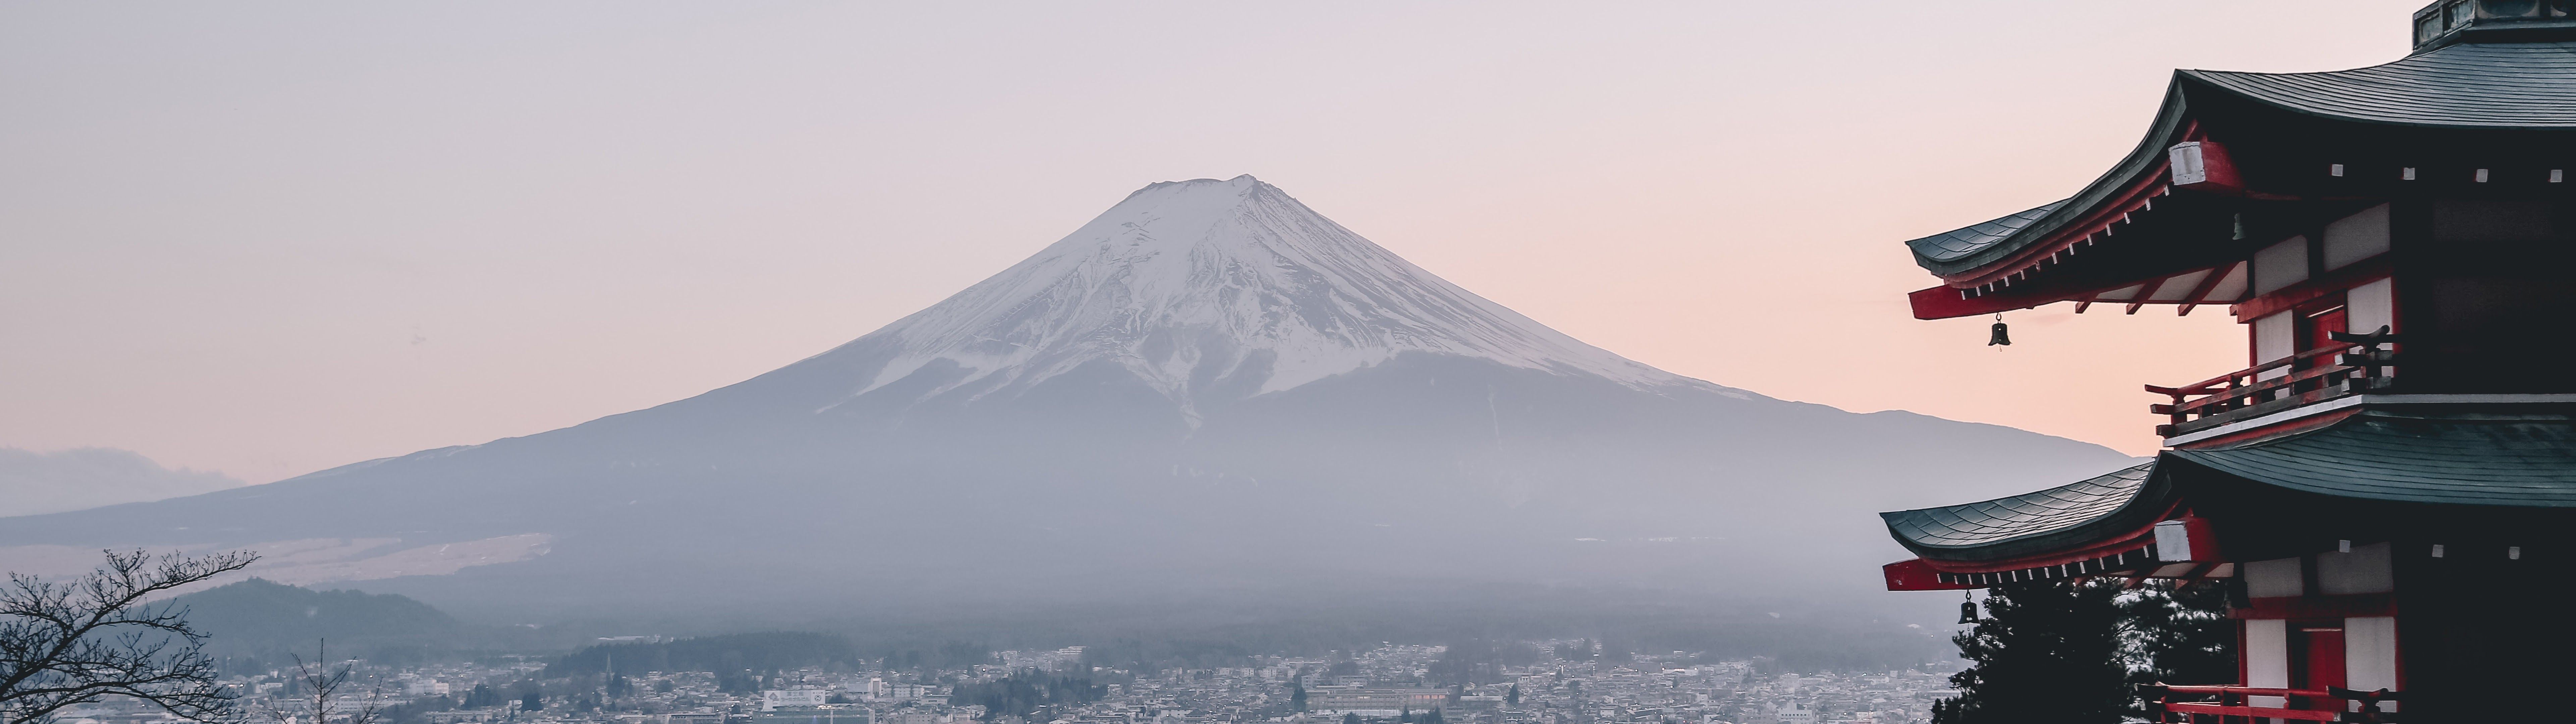 Mount Fuji City Japan Landscape Scenery 8K Wallpaper